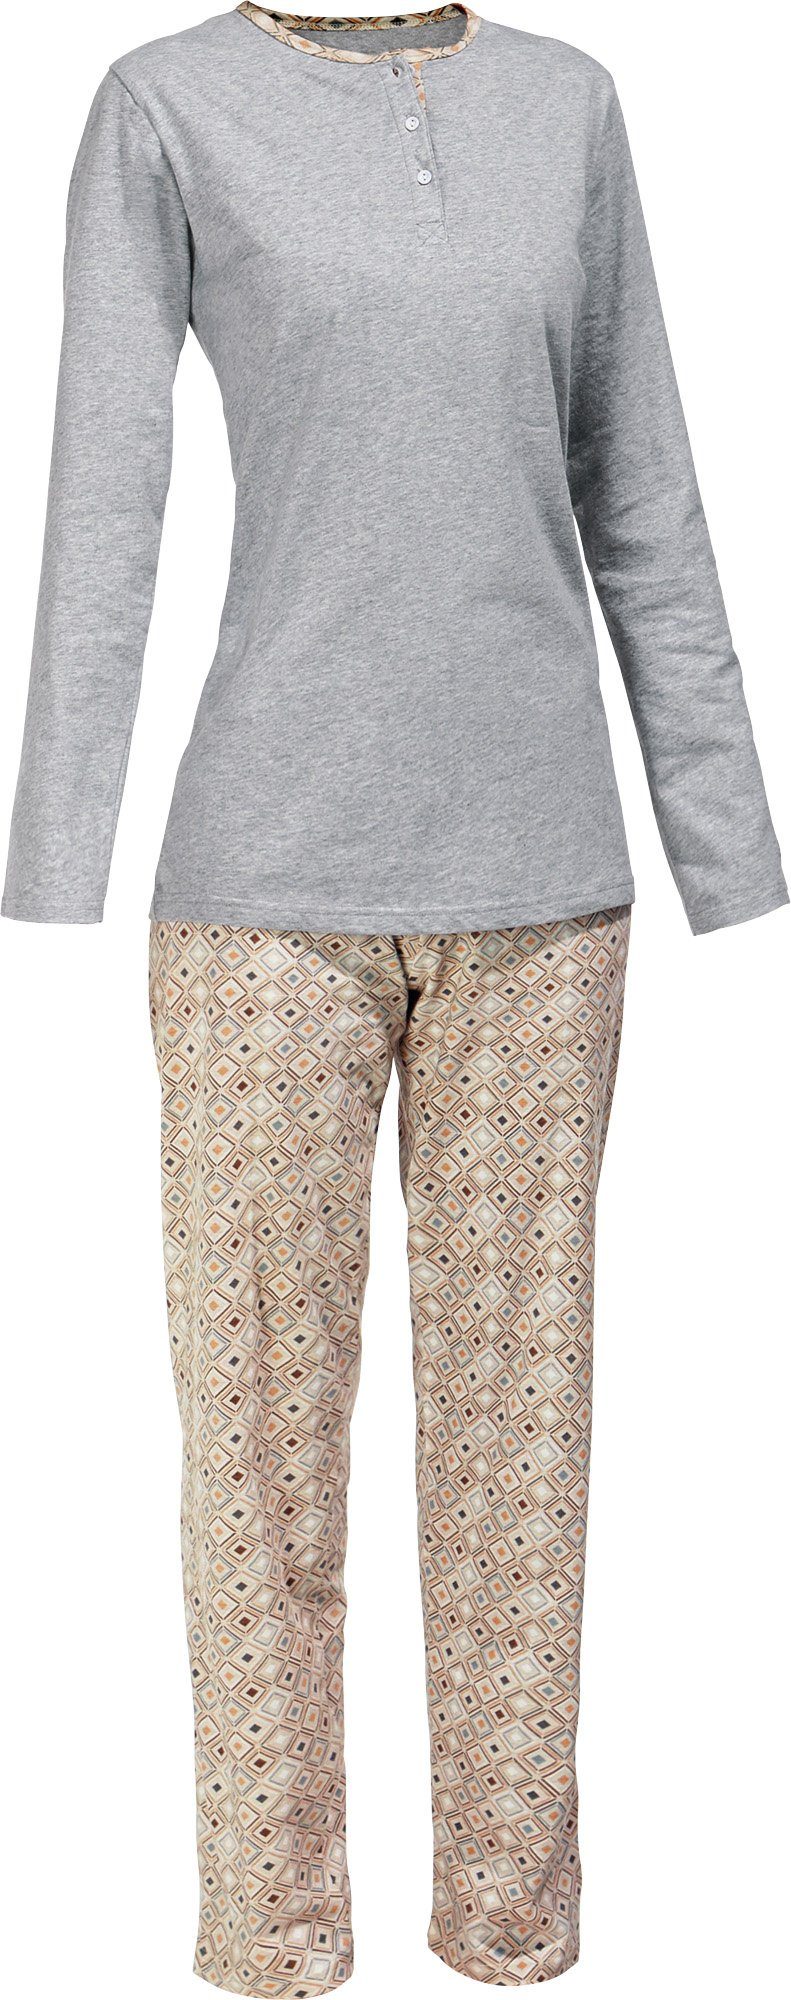 Erwin Müller Pyjama Damen-Schlafanzug (2 tlg) Single-Jersey gemustert